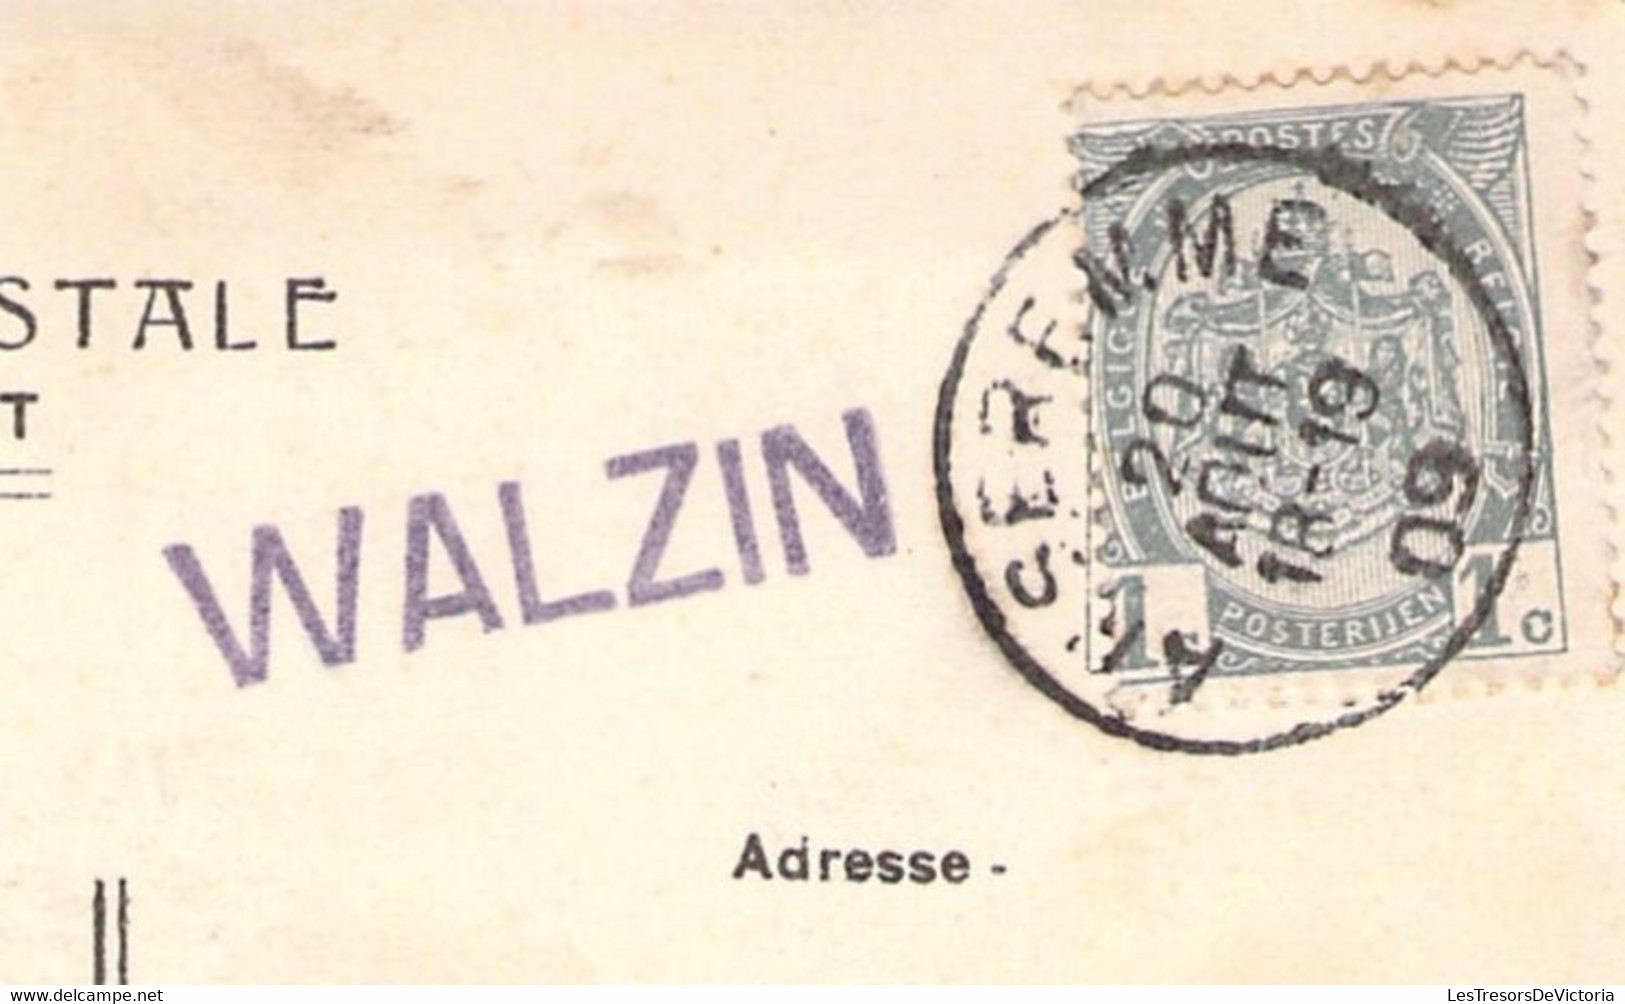 CPA Walzin Avec Griffe Linéaire Mauve WALZIN - 1909 - Langstempel